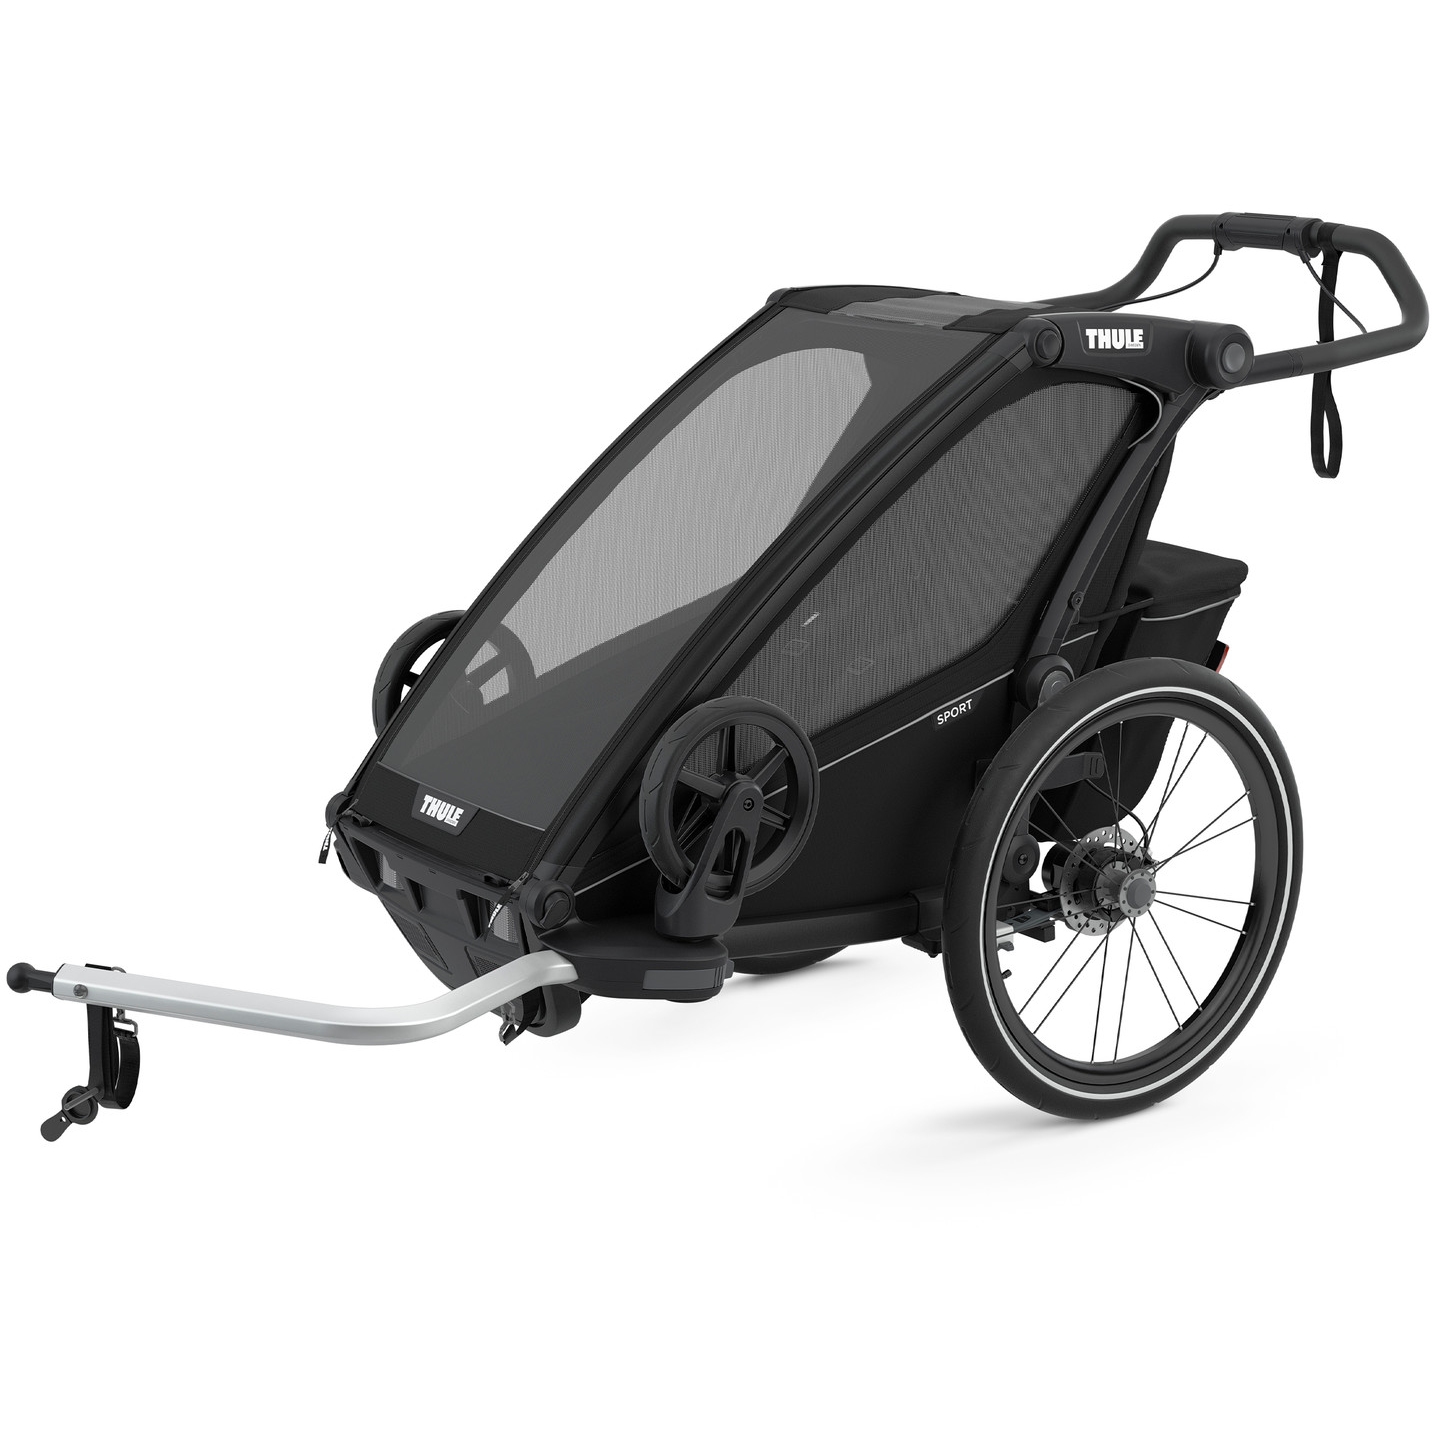 Produktbild von Thule Chariot Sport 1 - Fahrradanhänger für 1 Kind - midnight black